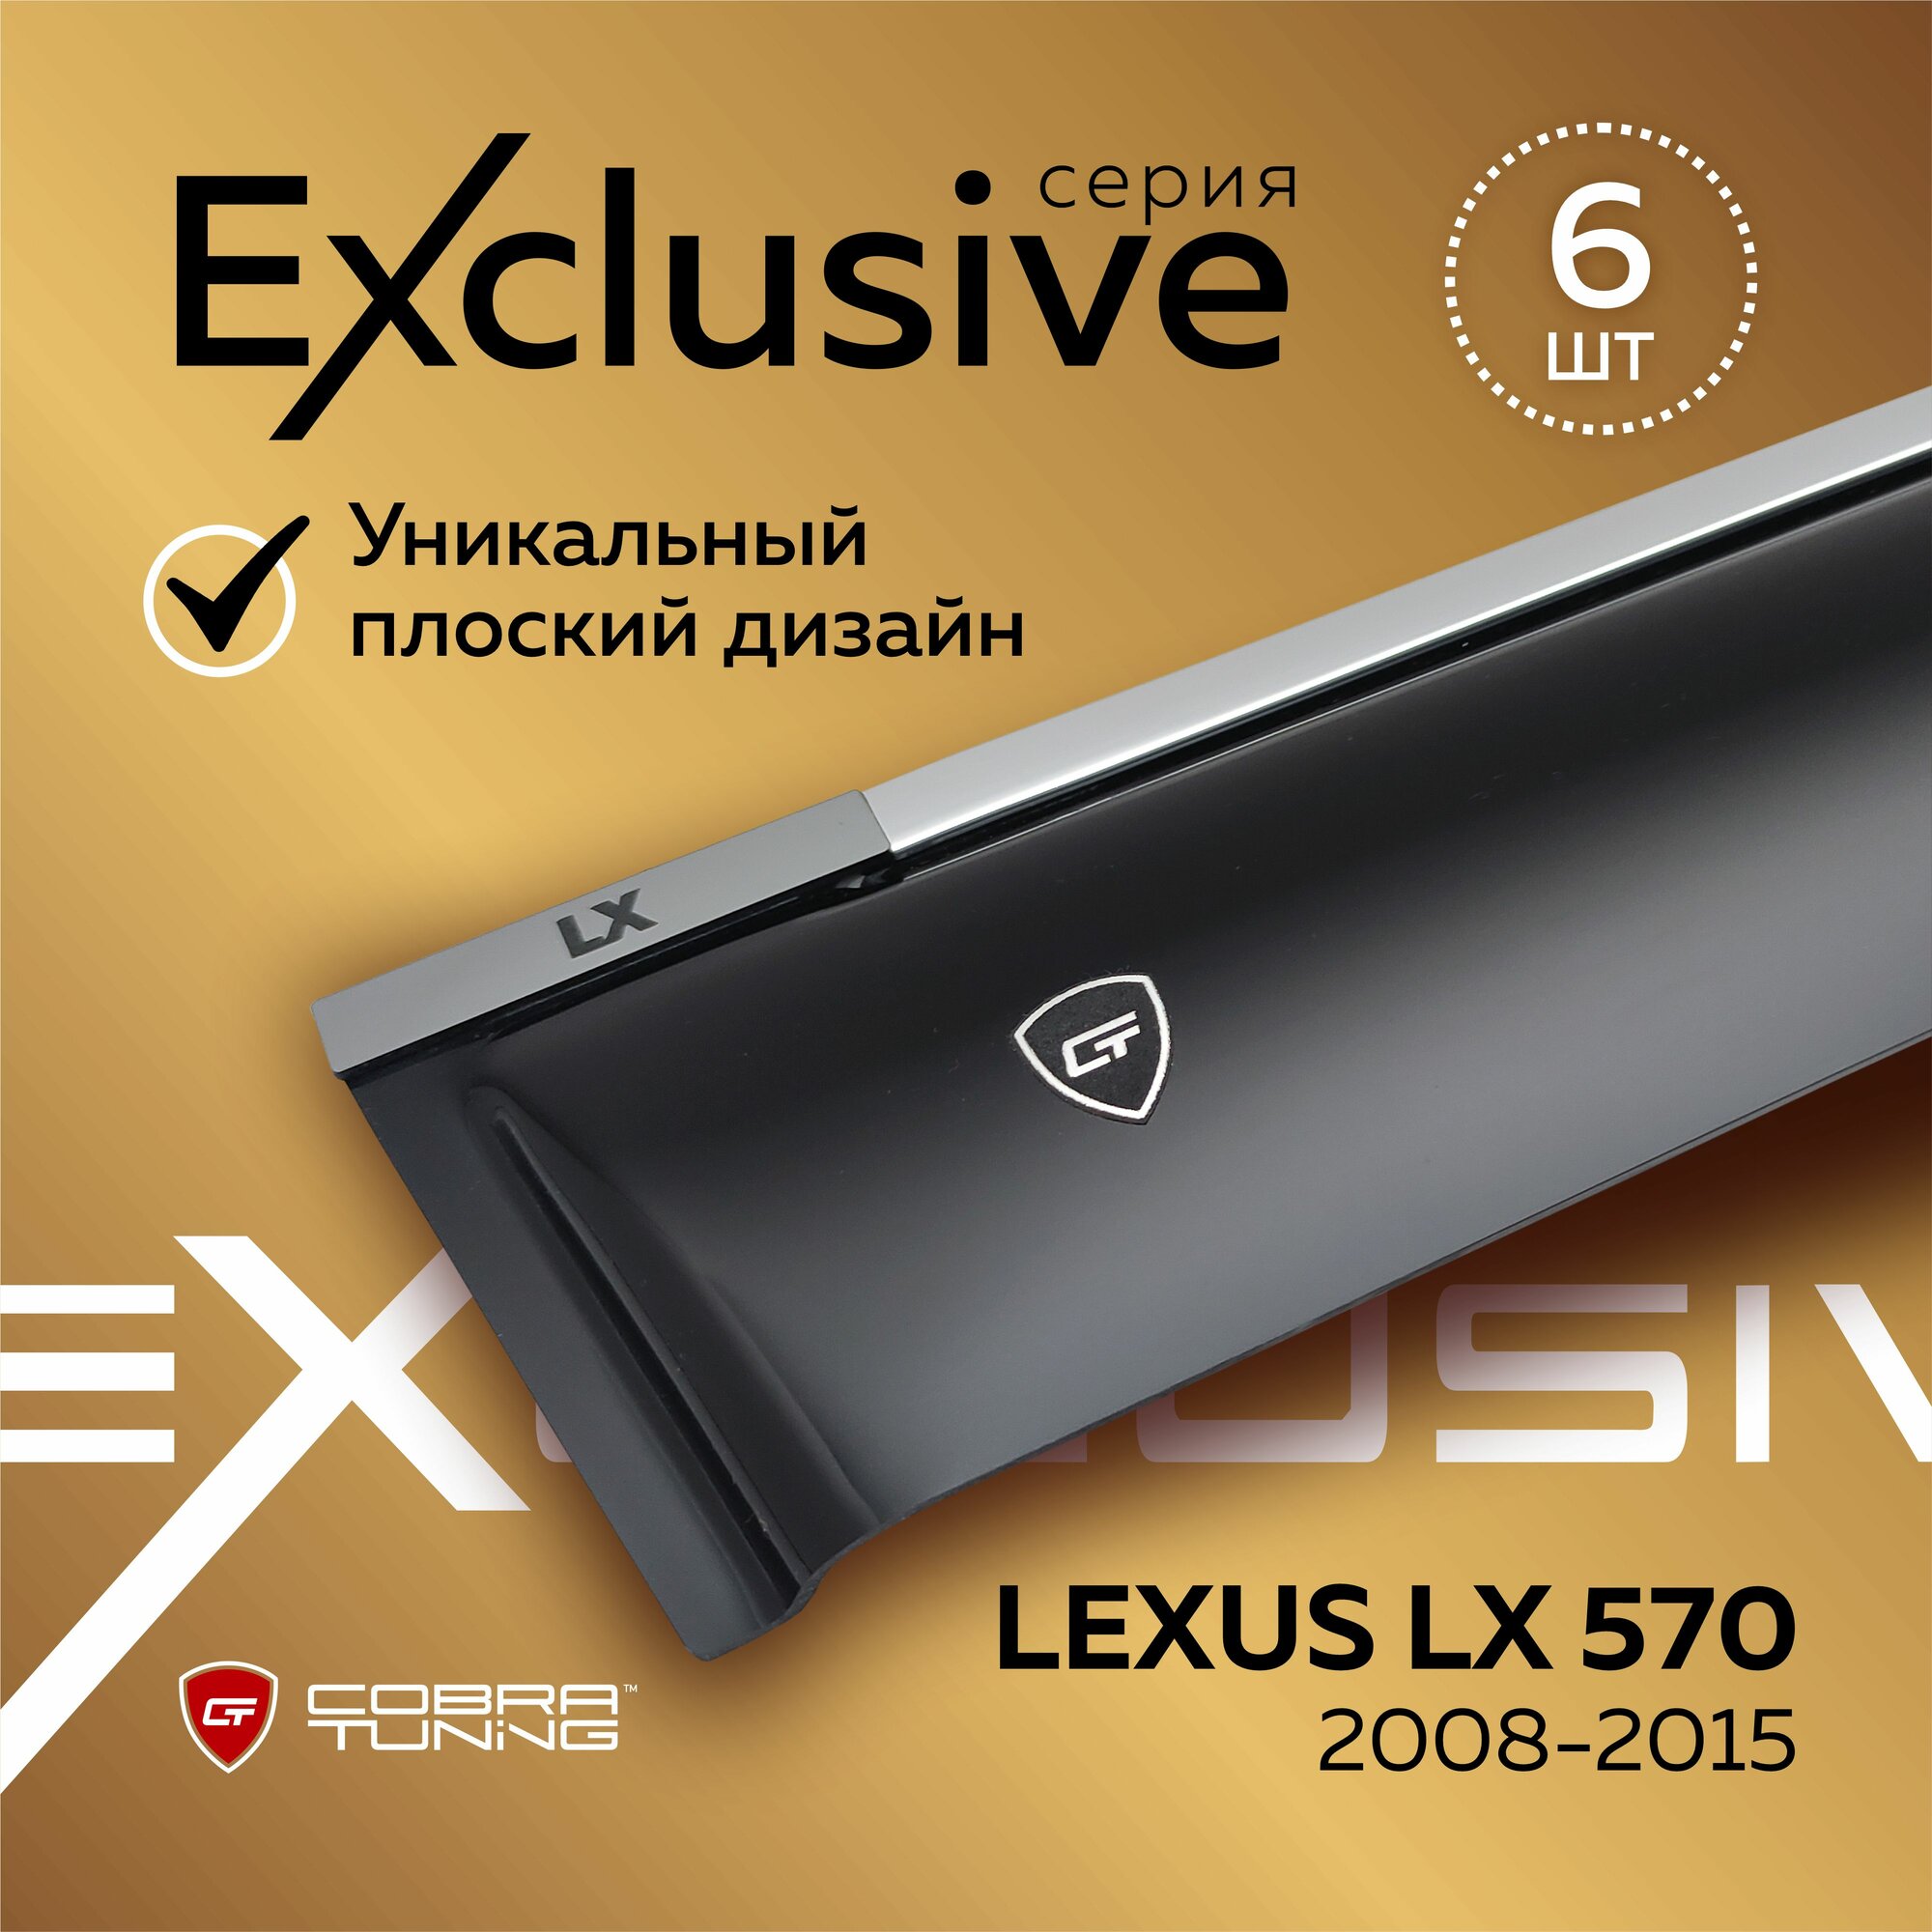 Дефлекторы боковых окон серия "Exclusive" для автомобиля Lexus LX 570 (Лексус Лх) J200 с 2008 по 2015, ветровики с хром молдингом, полный комплект с уголками, 6 частей, Cobra Tuning